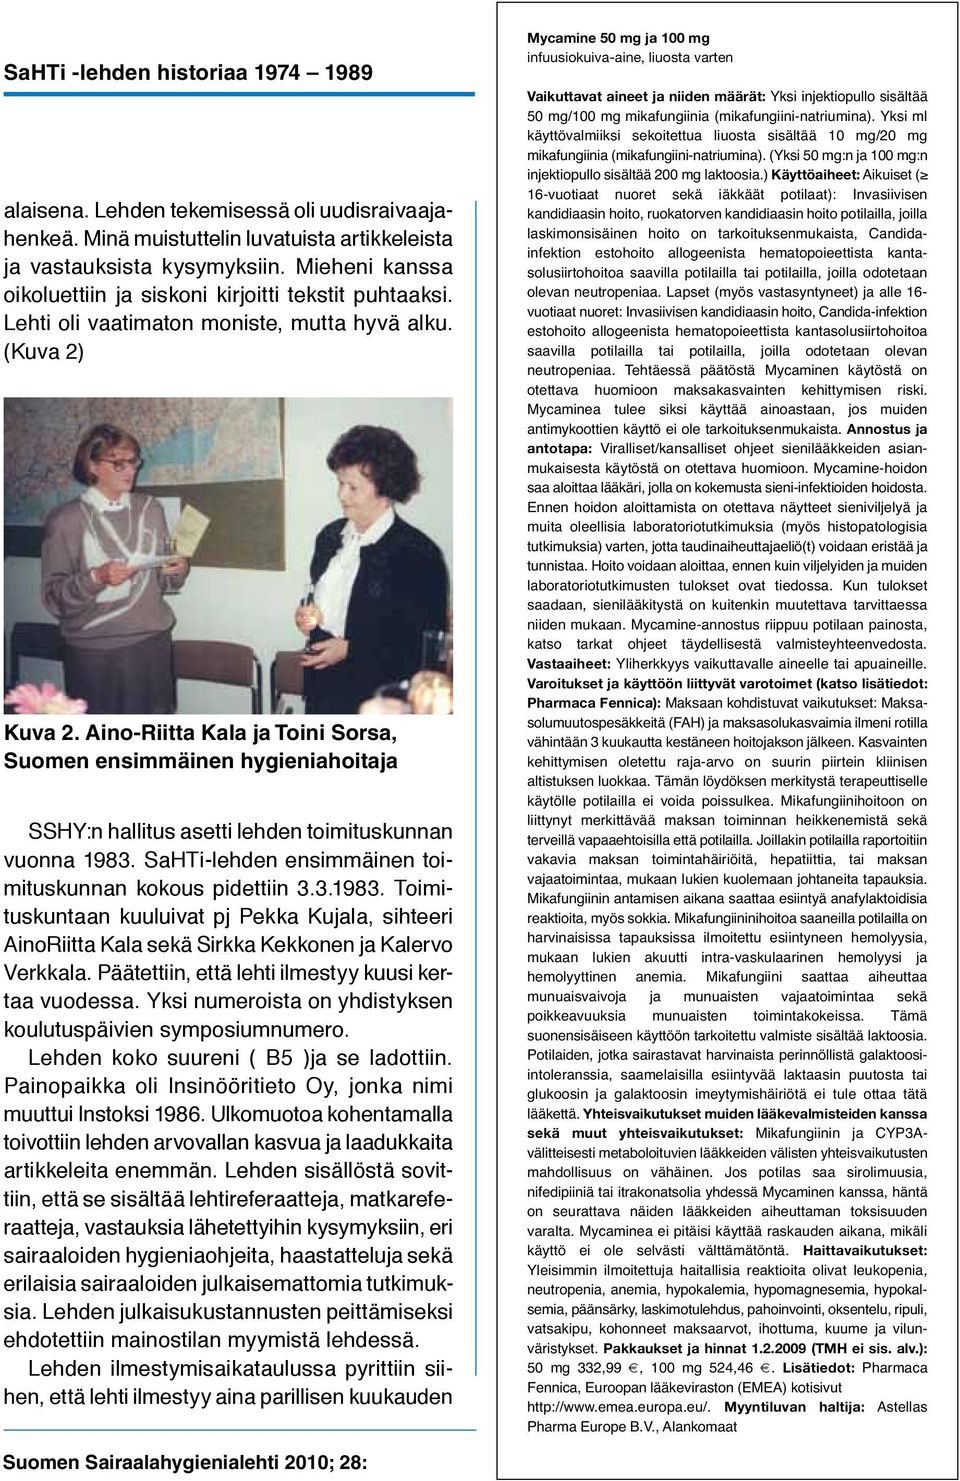 Aino-Riitta Kala ja Toini Sorsa, Suomen ensimmäinen hygieniahoitaja SSHY:n hallitus asetti lehden toimituskunnan vuonna 1983.